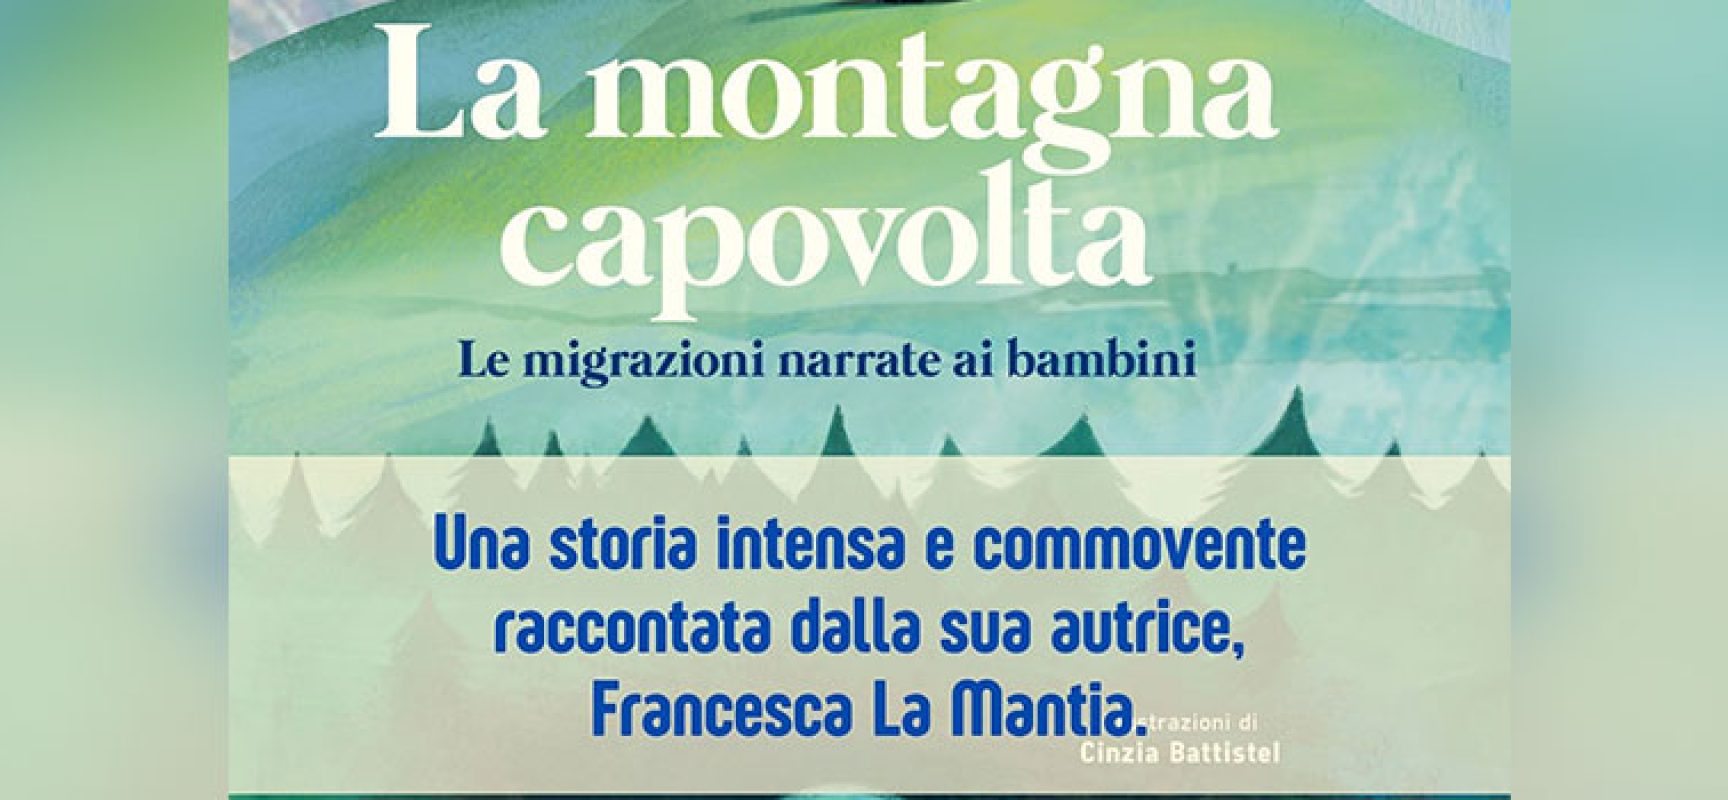 “La montagna capovolta”: Francesca La Mantia racconta le migrazioni ai bambini